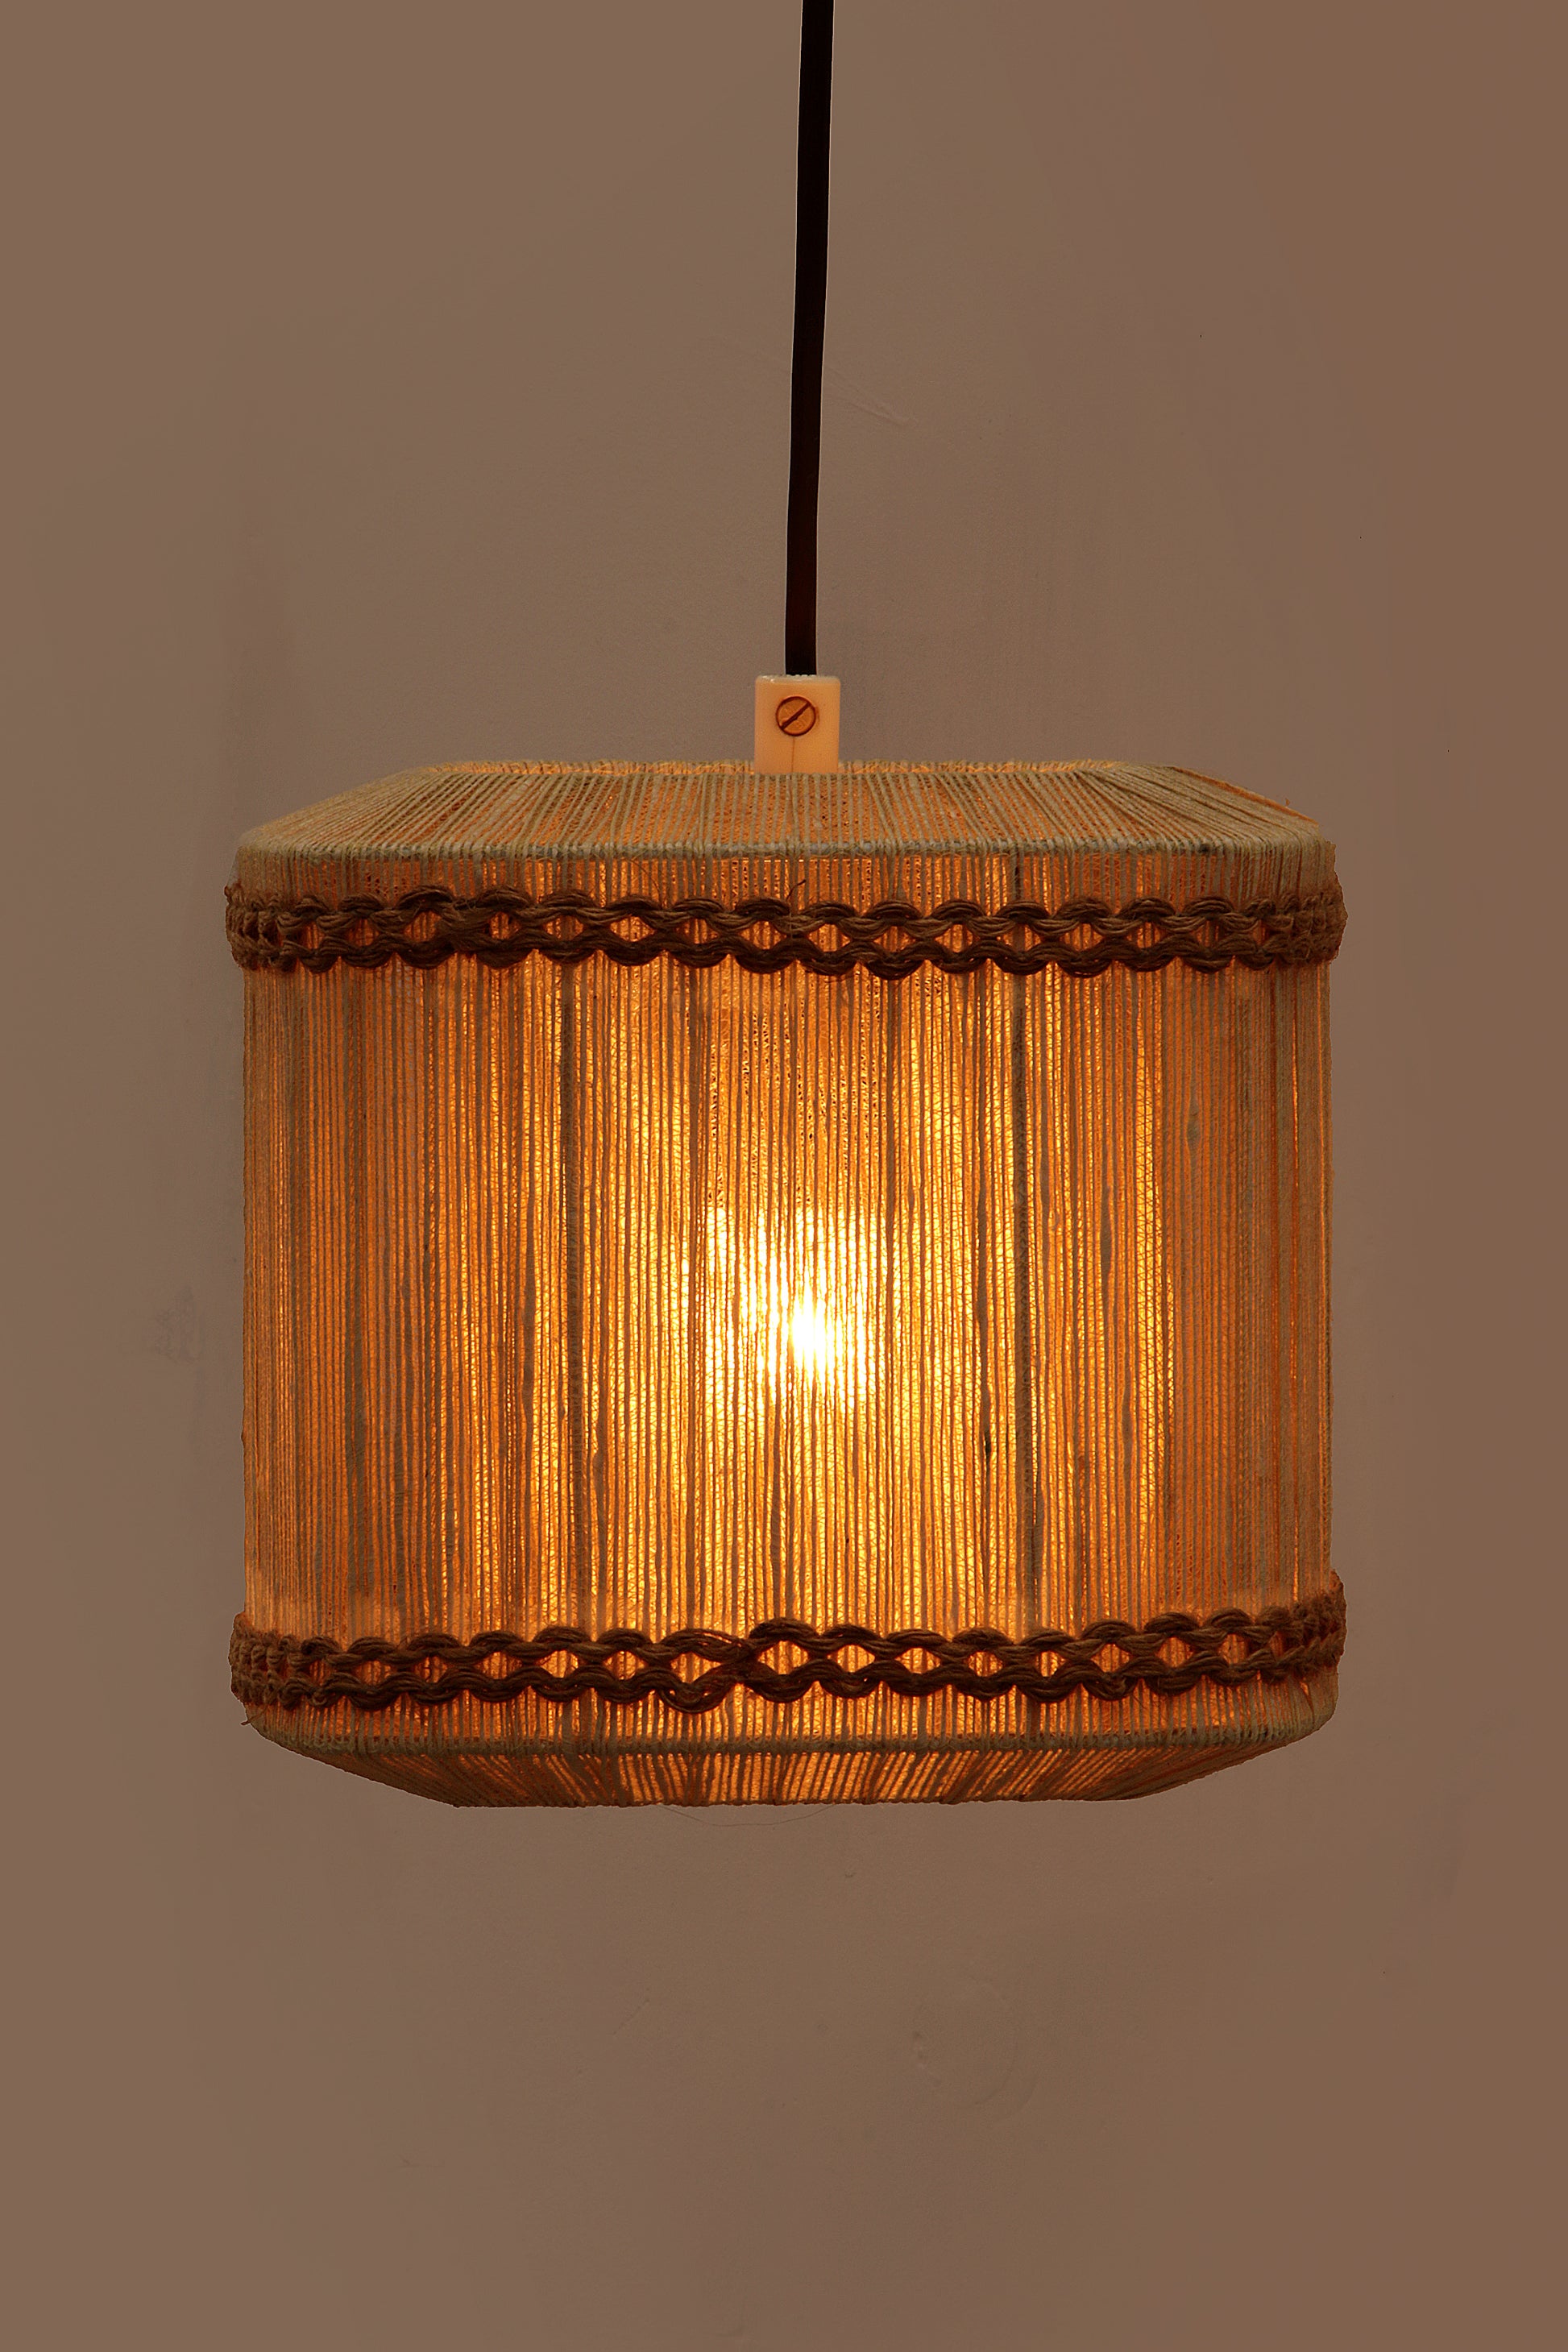 Vintage Wand hanglamp gemaakt van touw en teak,1960 Zweden.